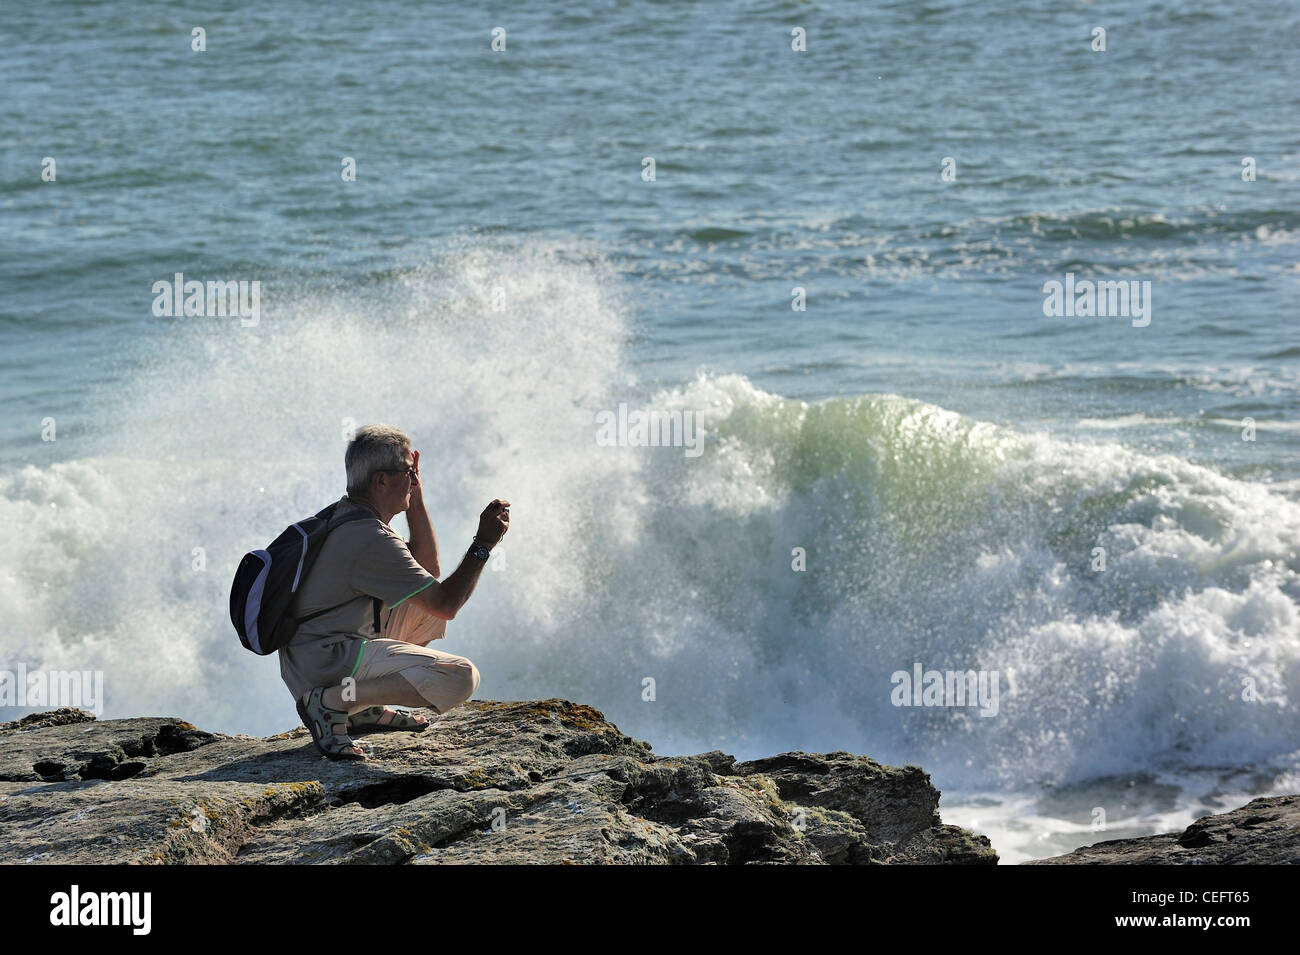 Prise de photos touristiques de vagues se brisant sur les rochers à la Pointe Saint-Gildas / Saint Gildas Point, Loire-Atlantique, France Banque D'Images